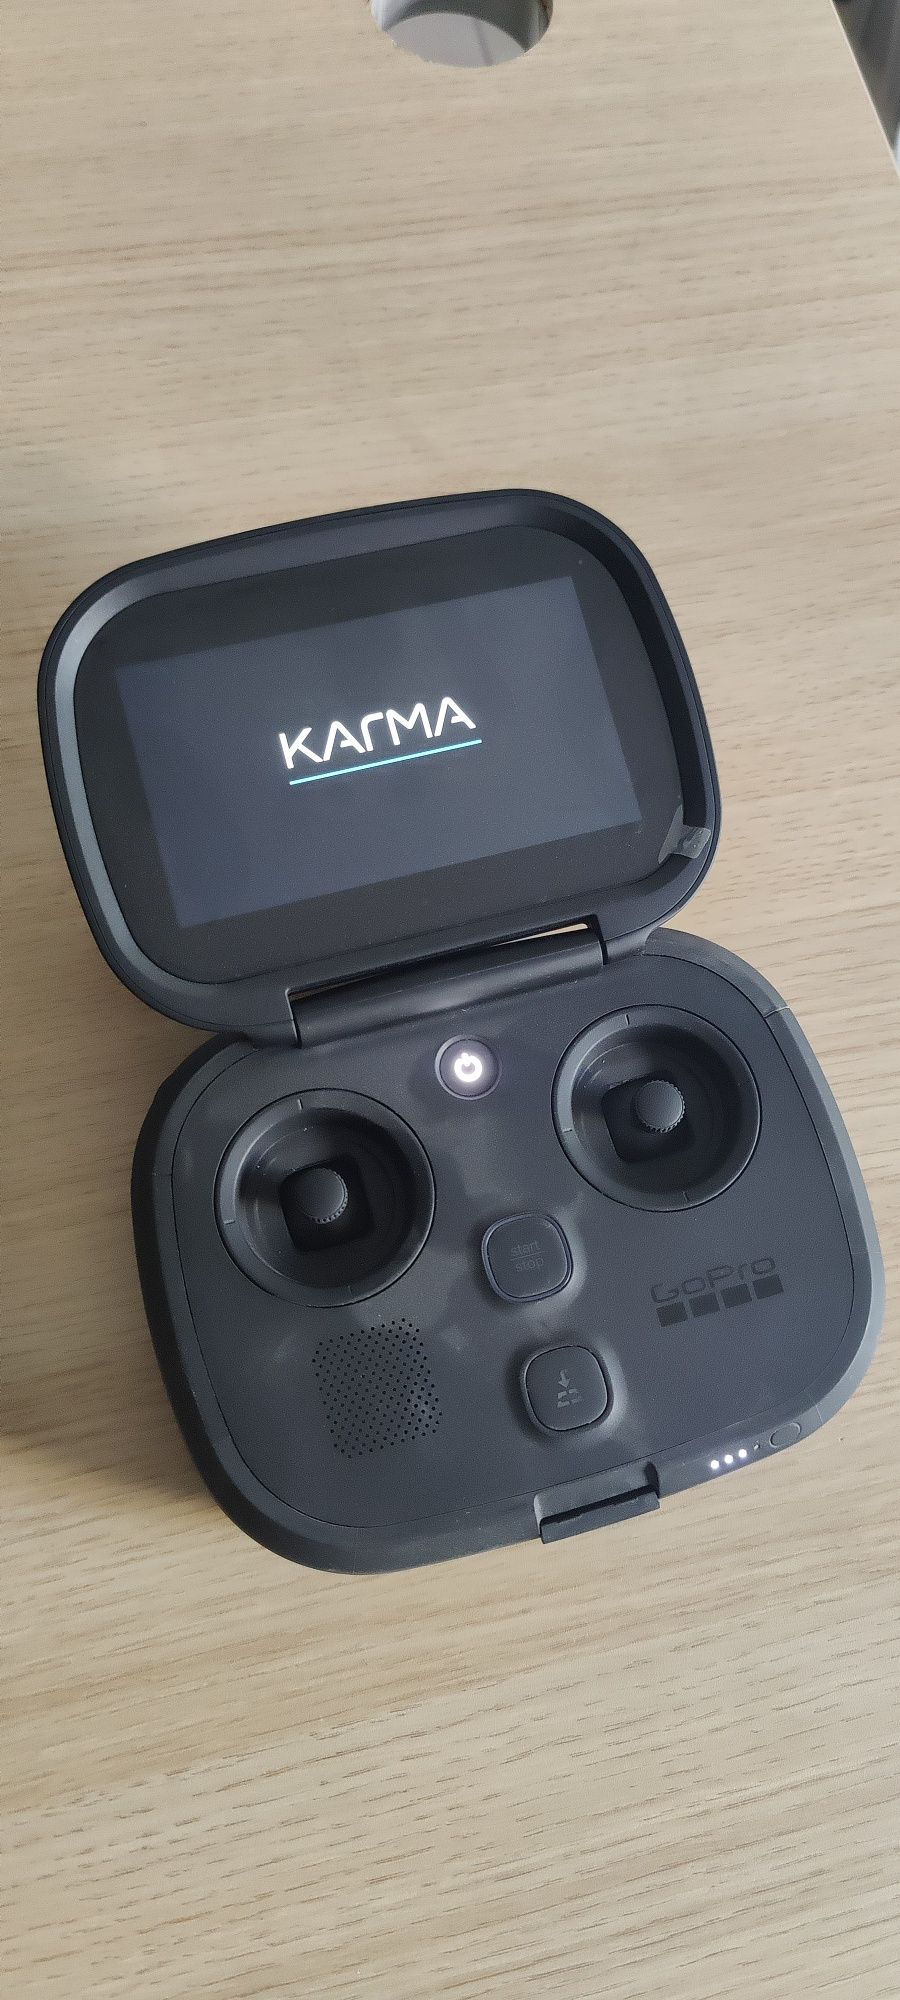 Telecomanda pentru controlul dronei GoPro Karma.